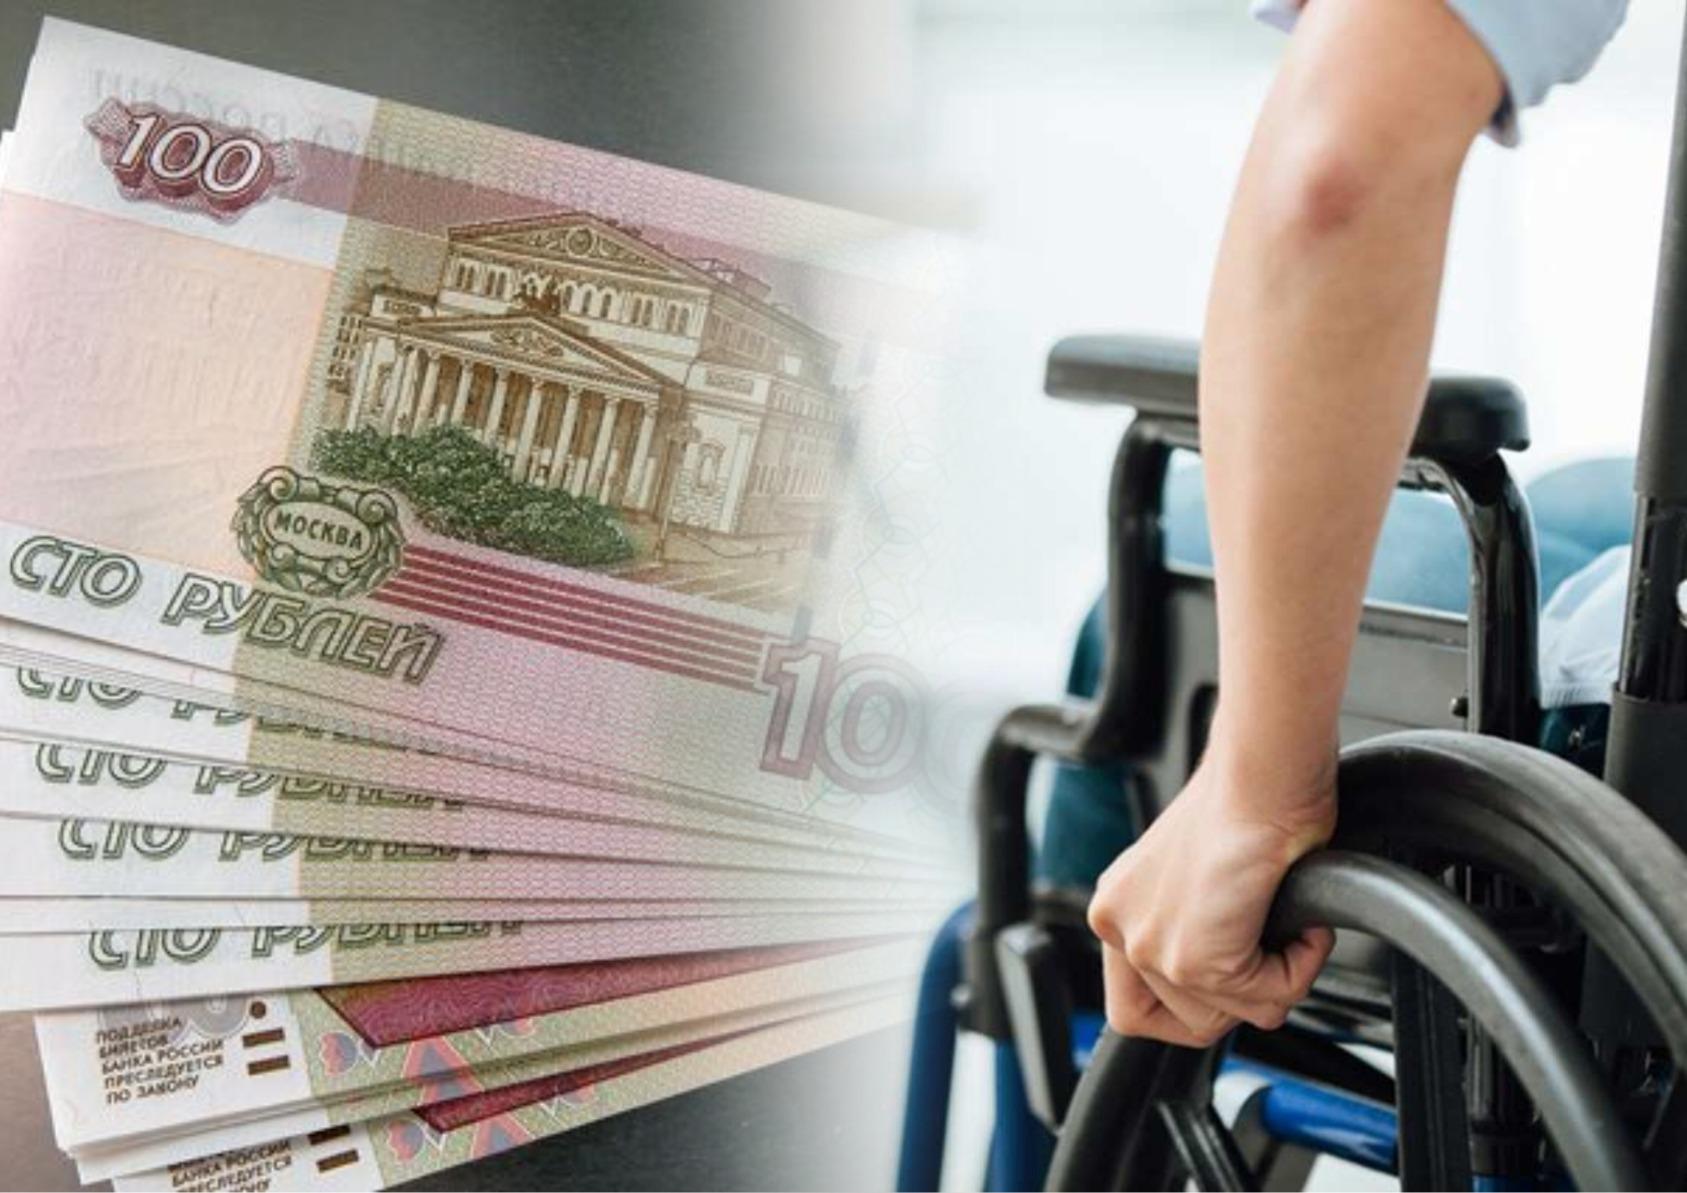 ВТБ окажет финансовую поддержку клиентам с инвалидностью